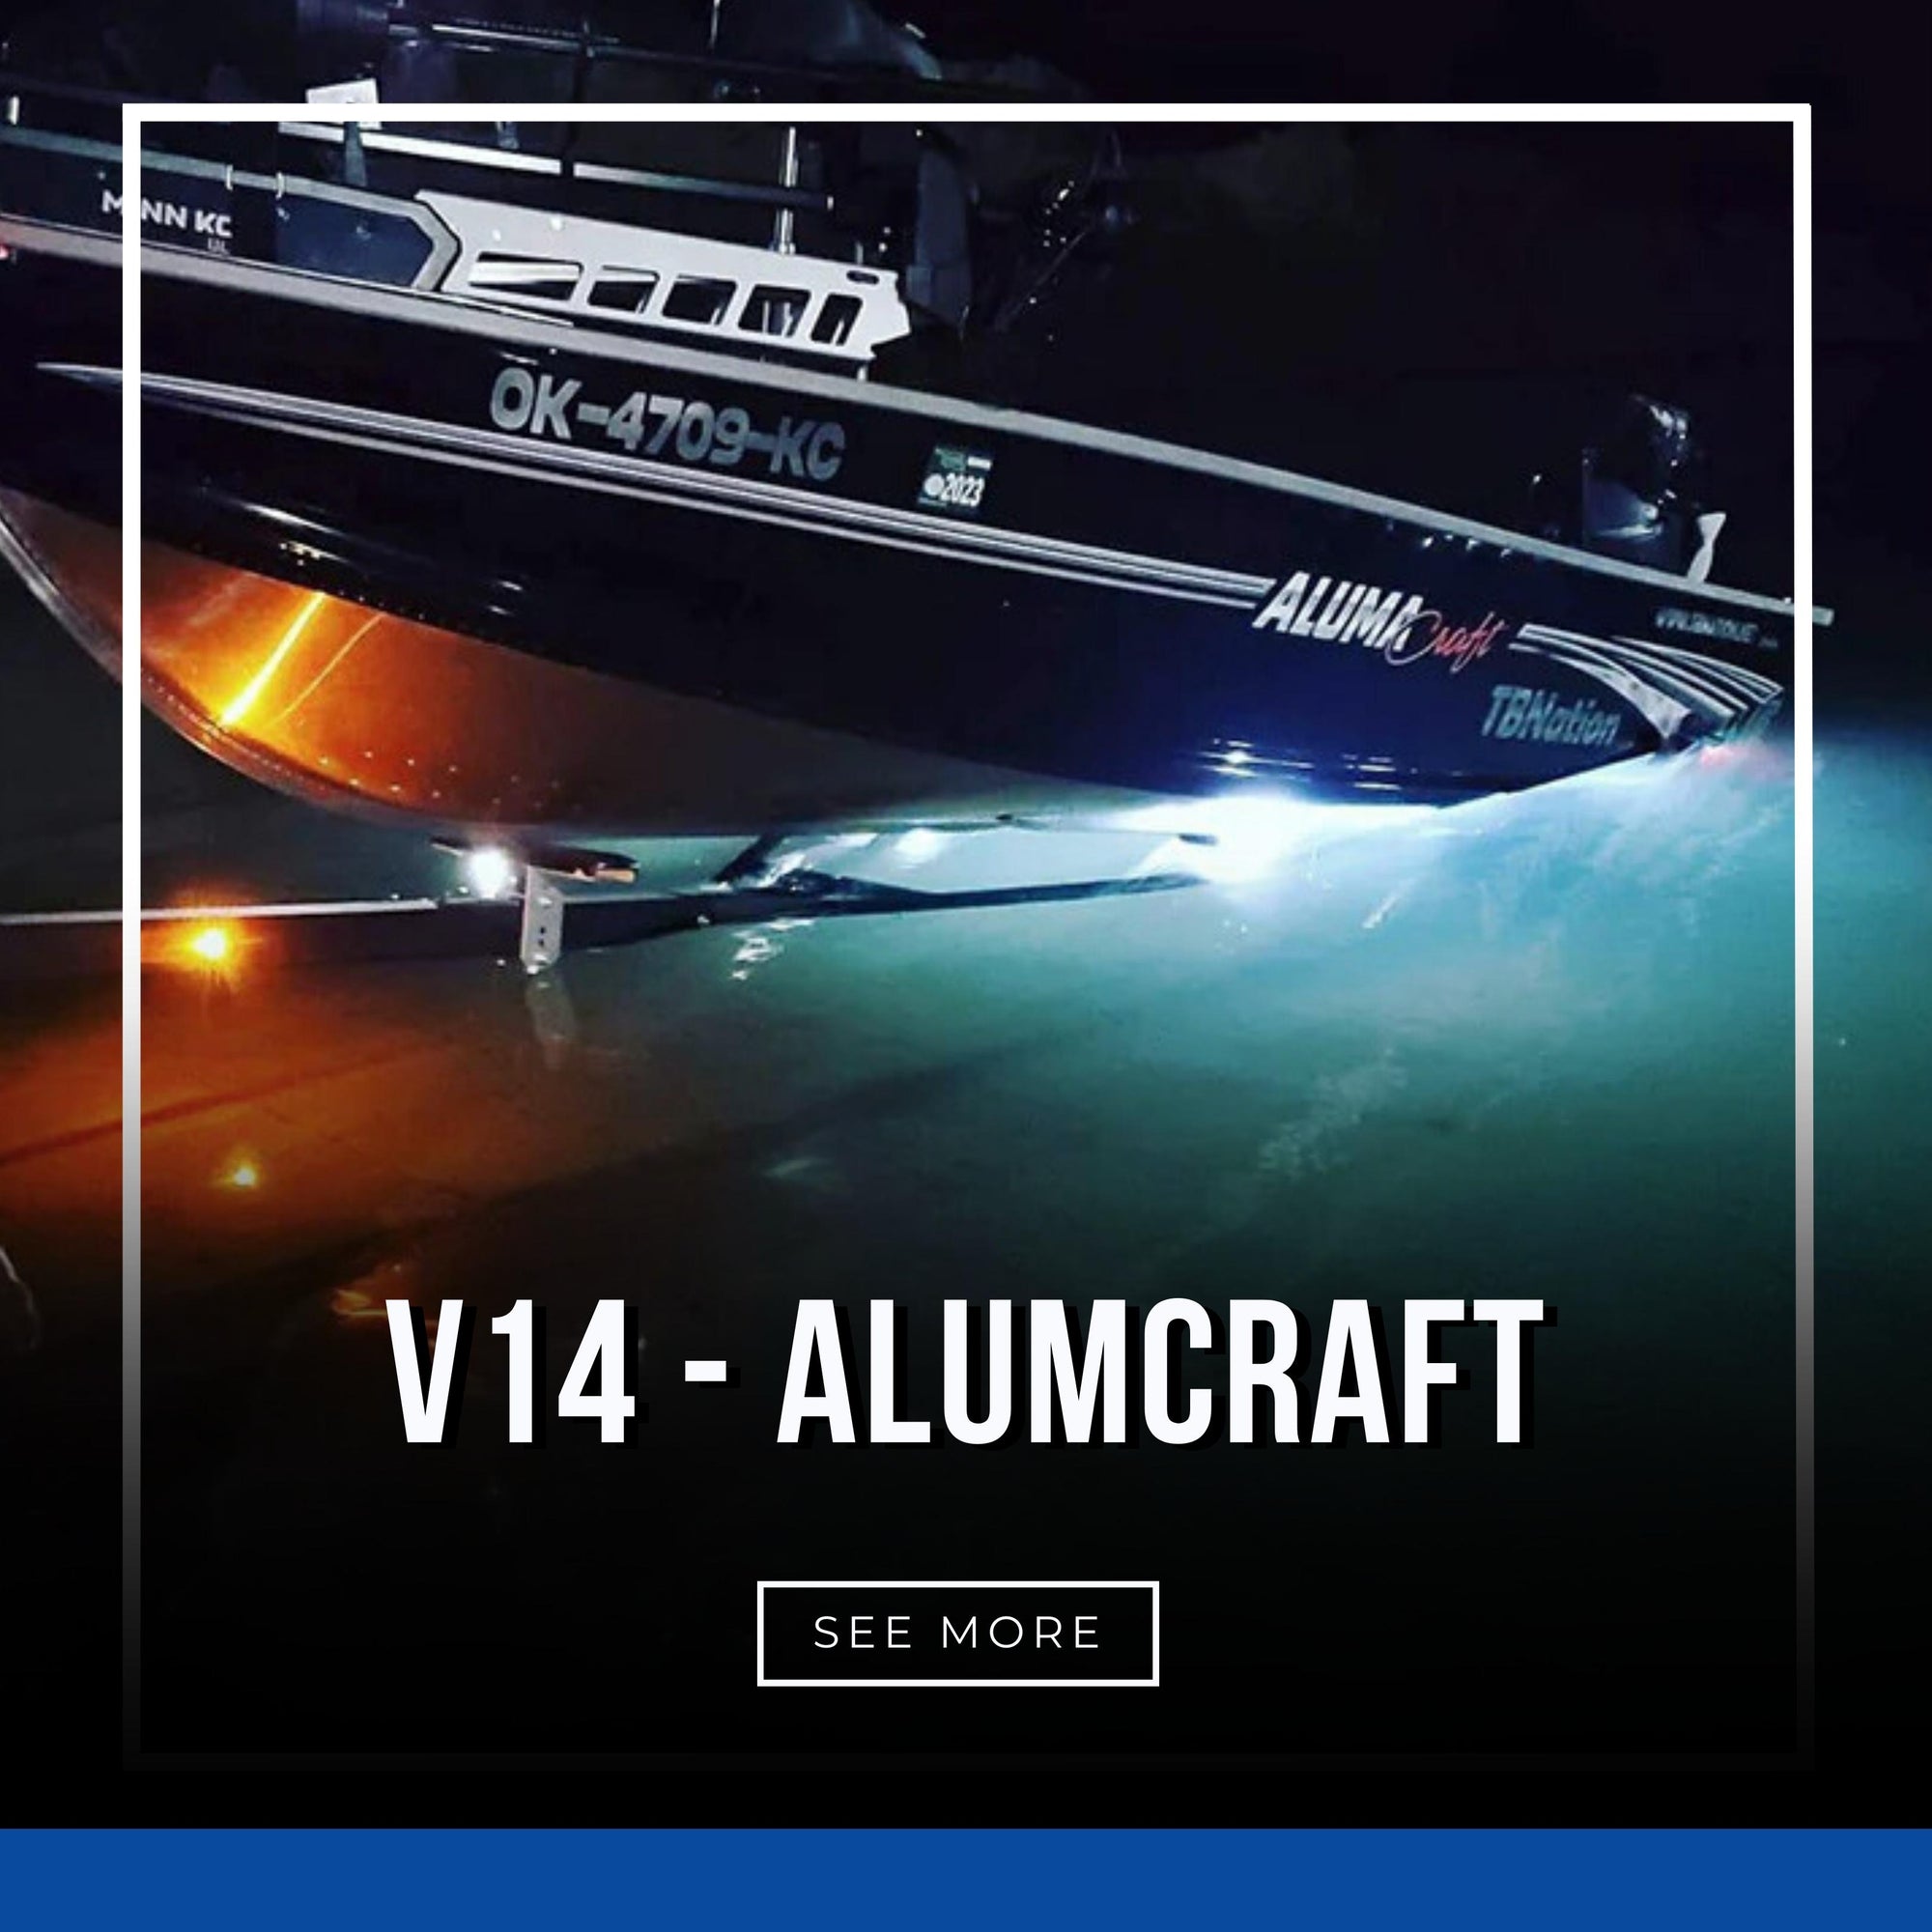 V14 - Alumacraft